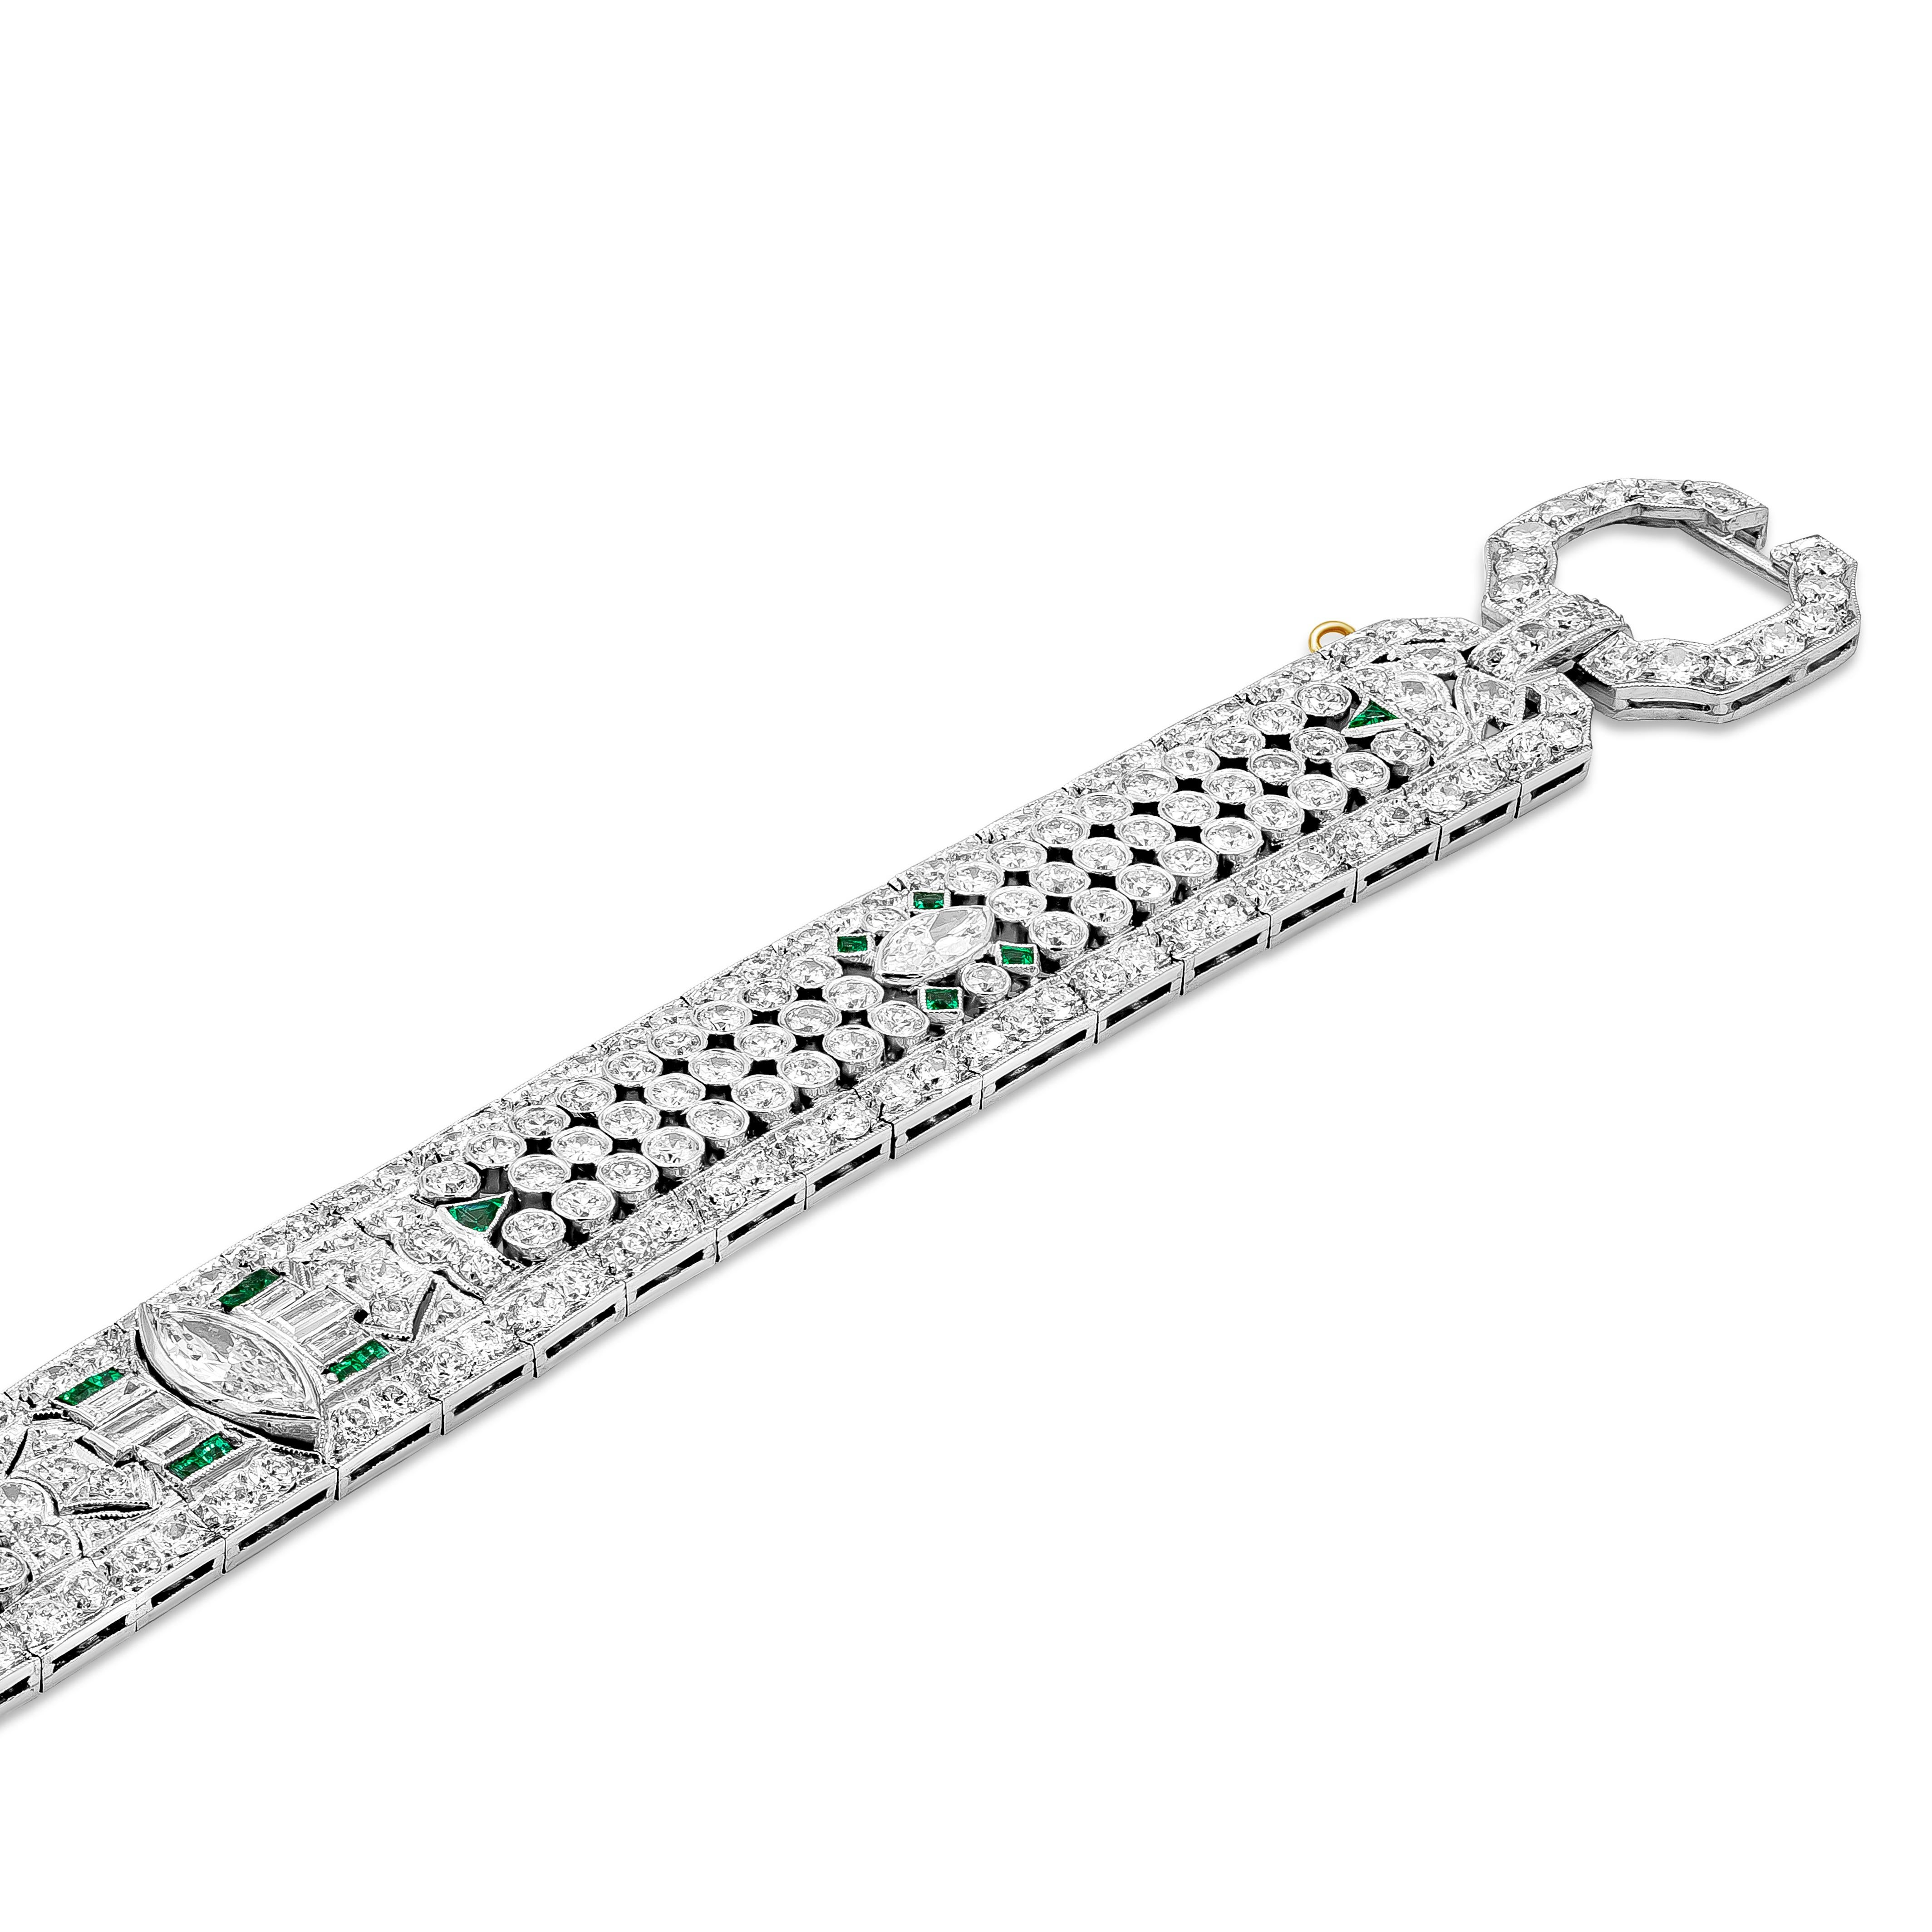 Ce bracelet remarquable présente 15,50 carats de diamants de tailles différentes dans un design élégant et complexe. Un diamant marquise pleine taille est serti au centre du bracelet. Des émeraudes vertes rehaussent également le bracelet. Fabriqué